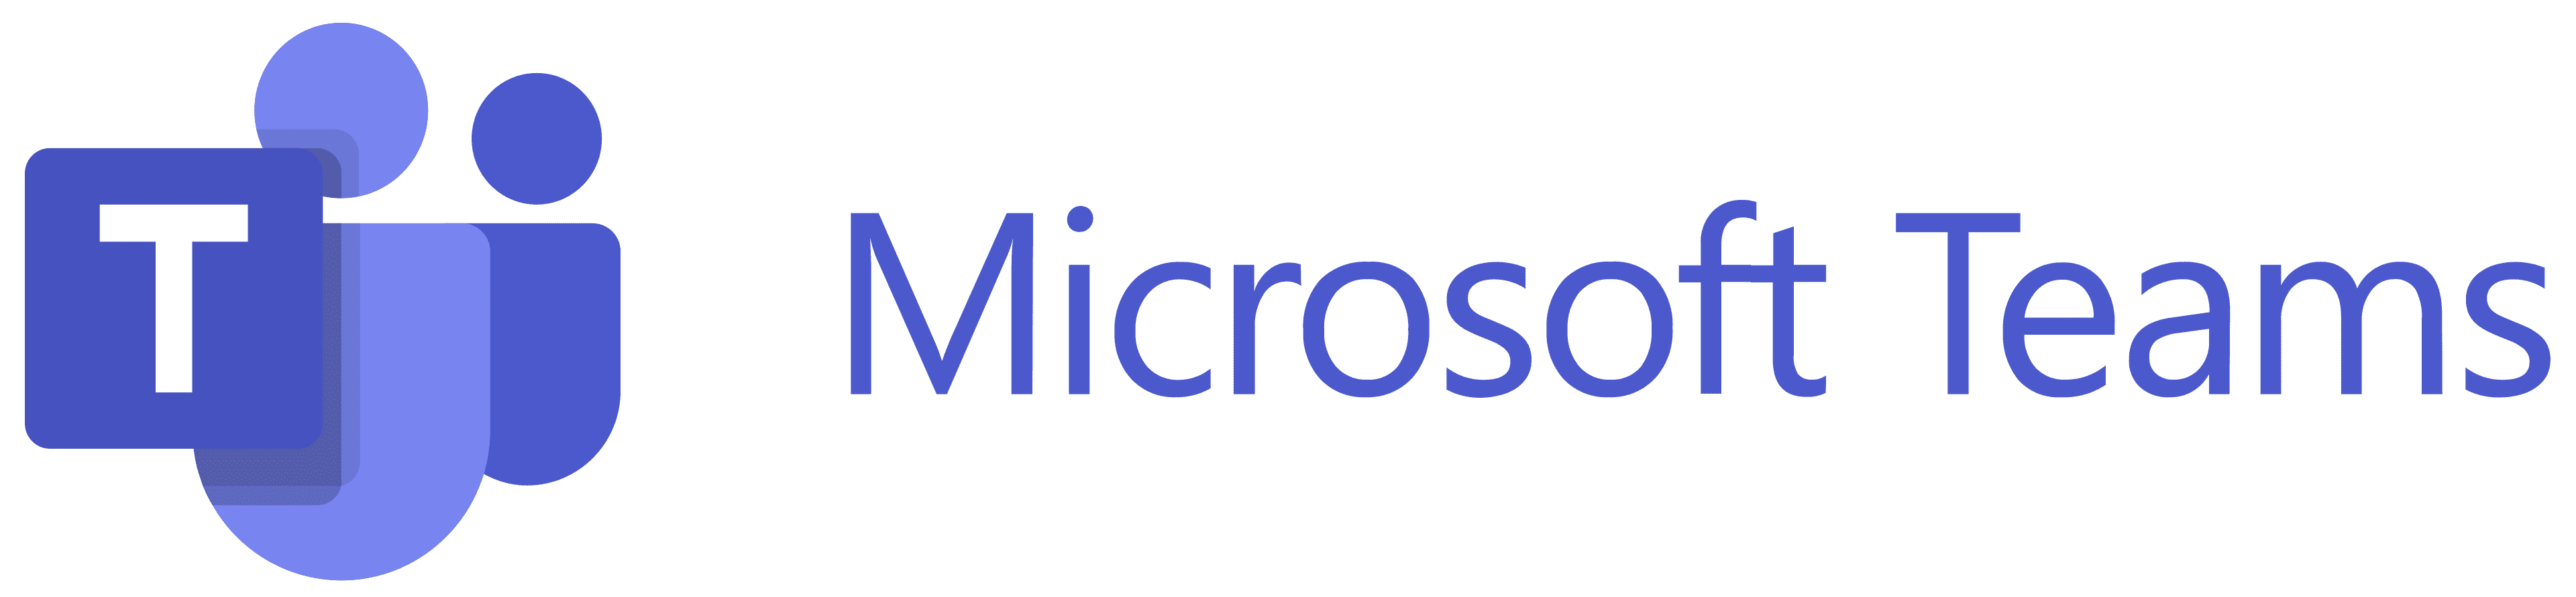 3CLogic - Microsoft Teams Contact Center Integration | 3CLogic